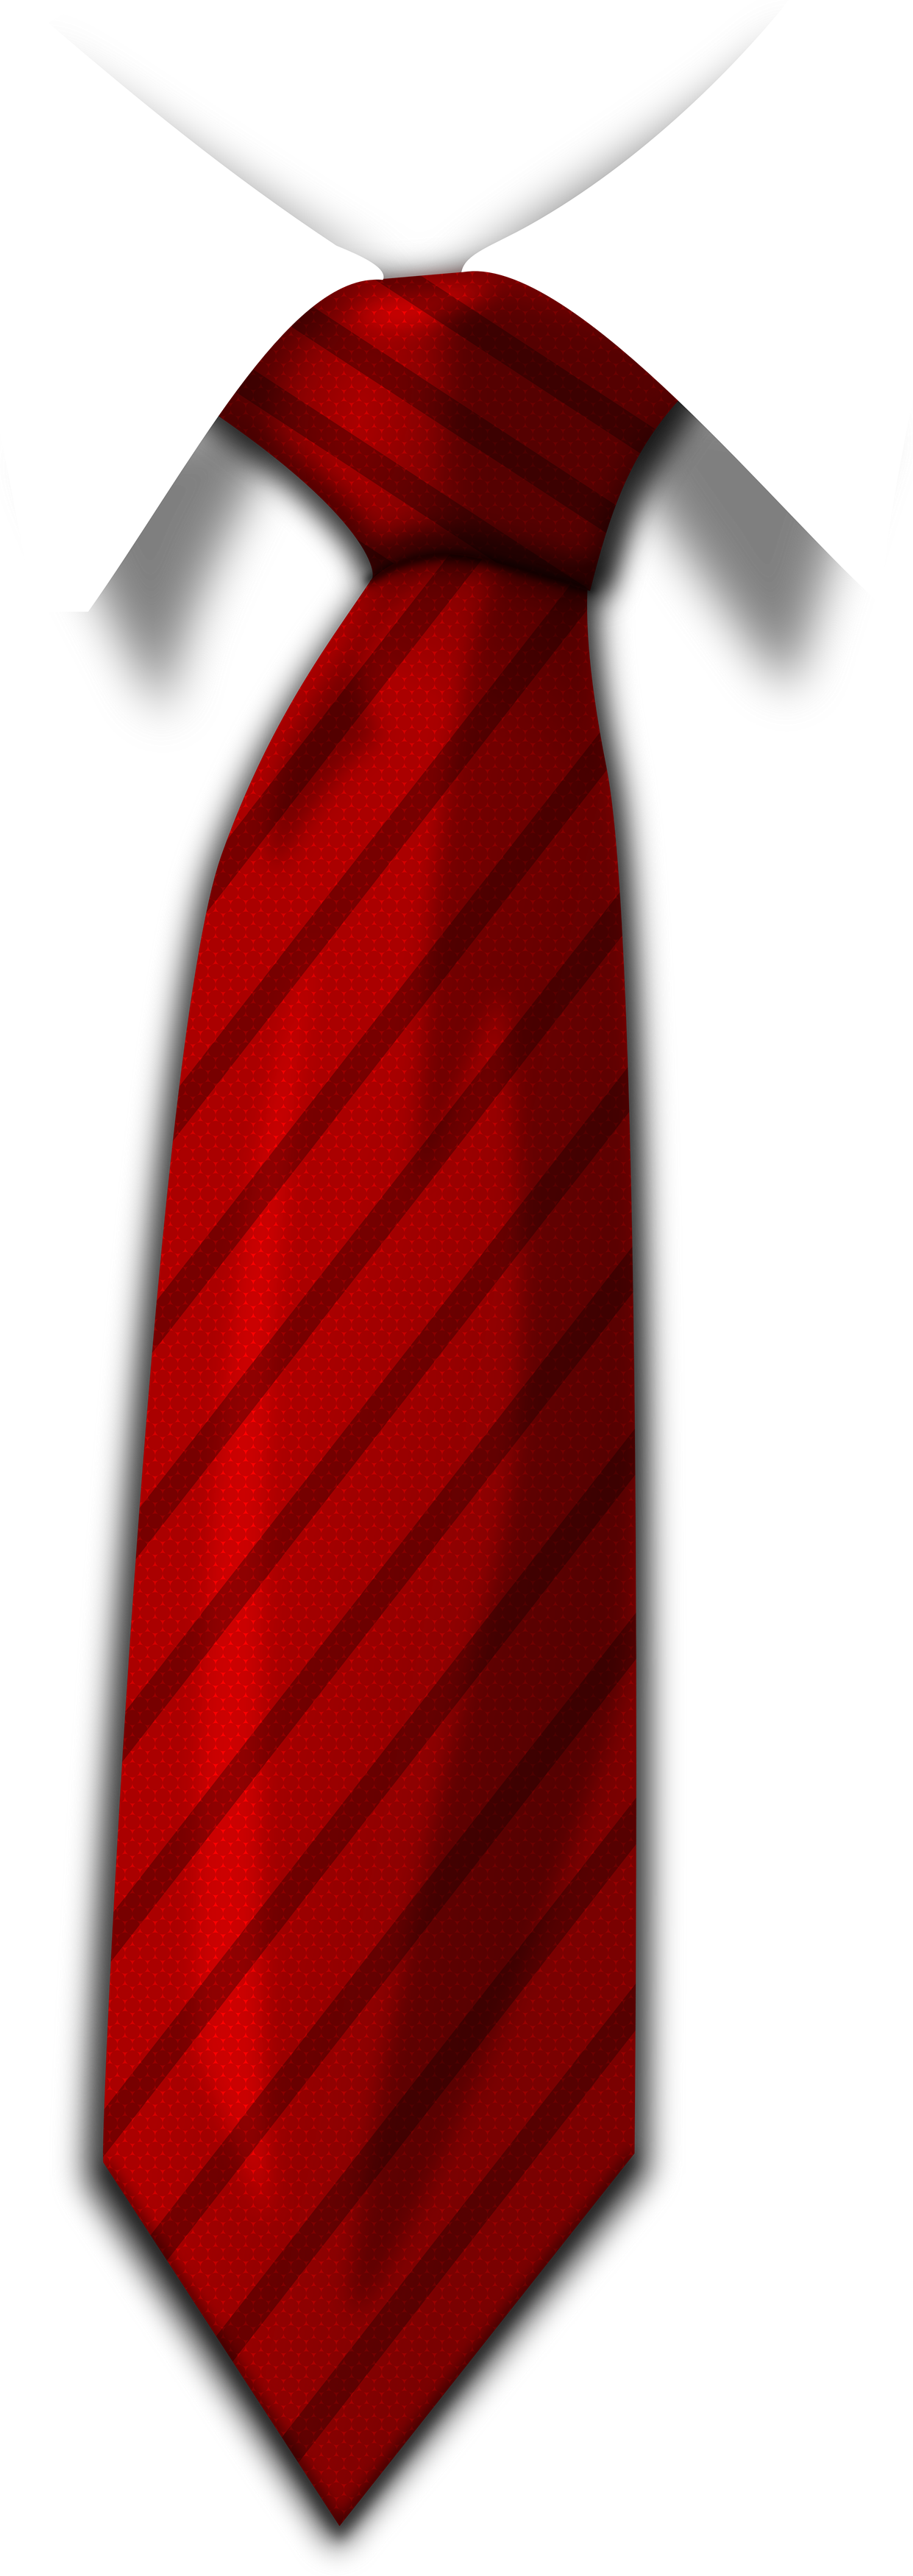 红色领带